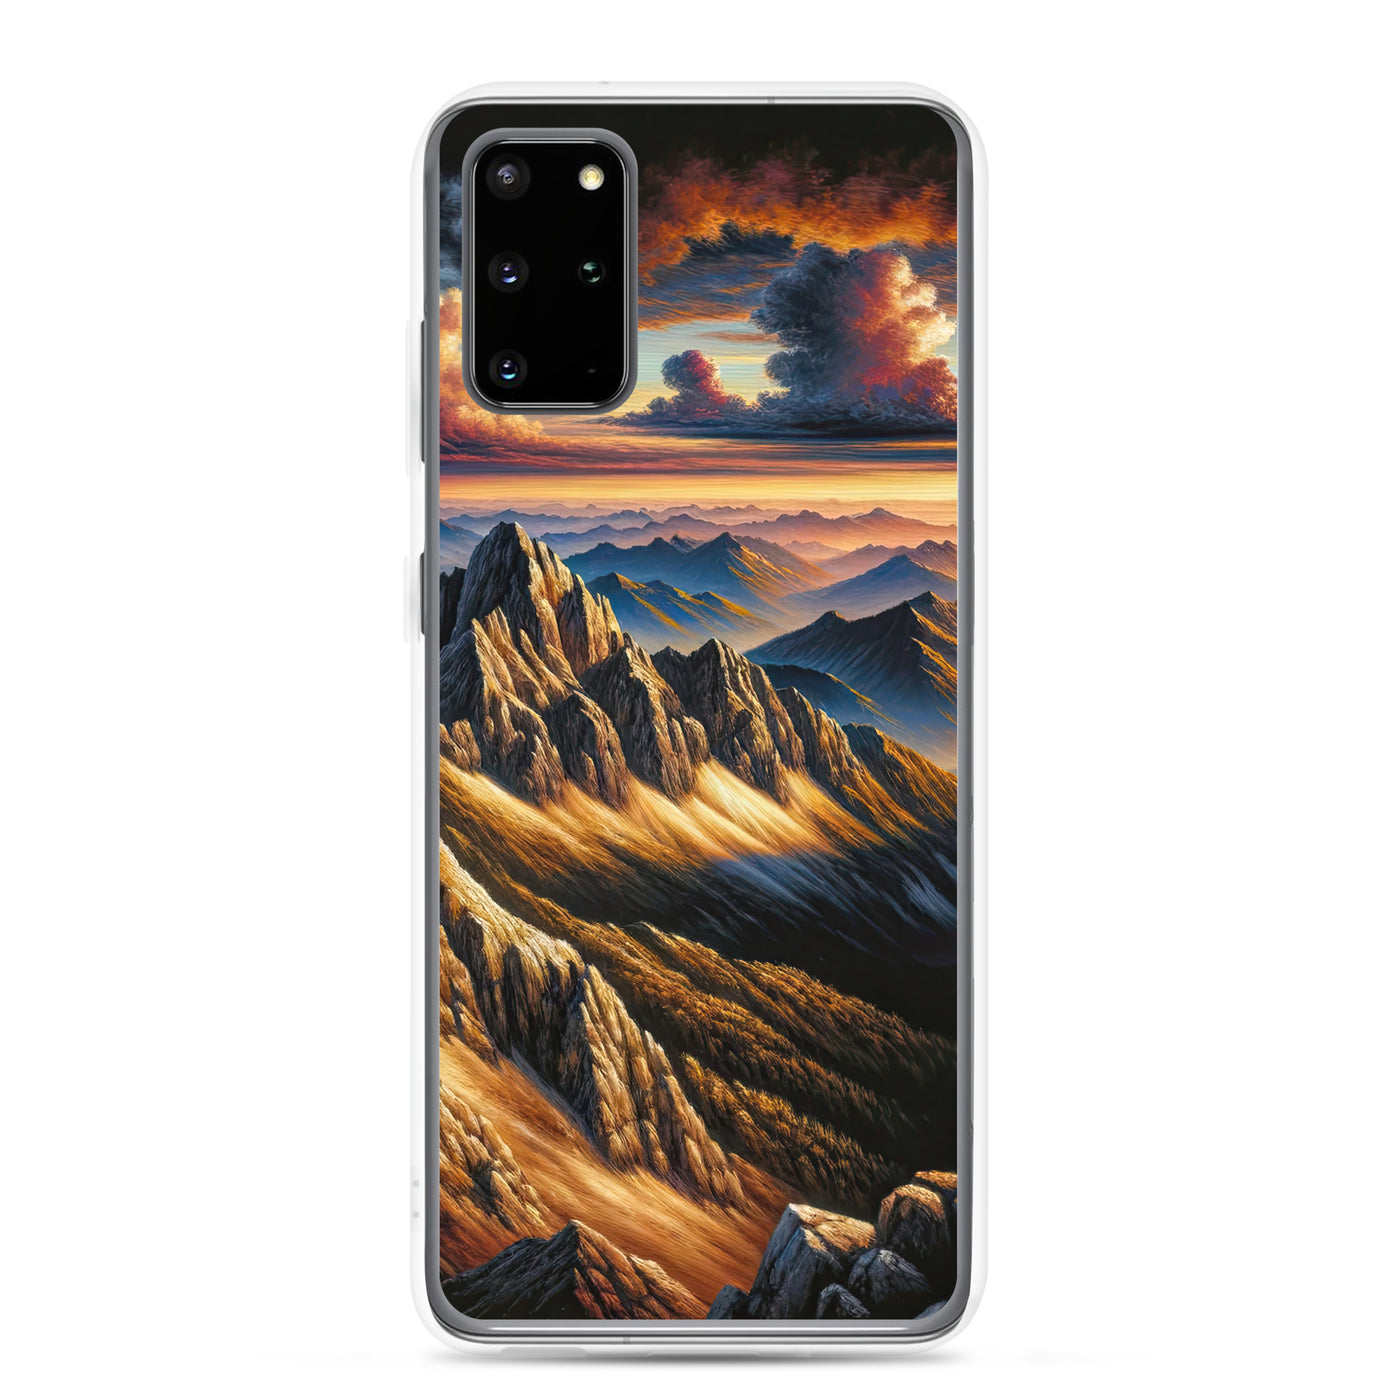 Alpen in Abenddämmerung: Acrylgemälde mit beleuchteten Berggipfeln - Samsung Schutzhülle (durchsichtig) berge xxx yyy zzz Samsung Galaxy S20 Plus